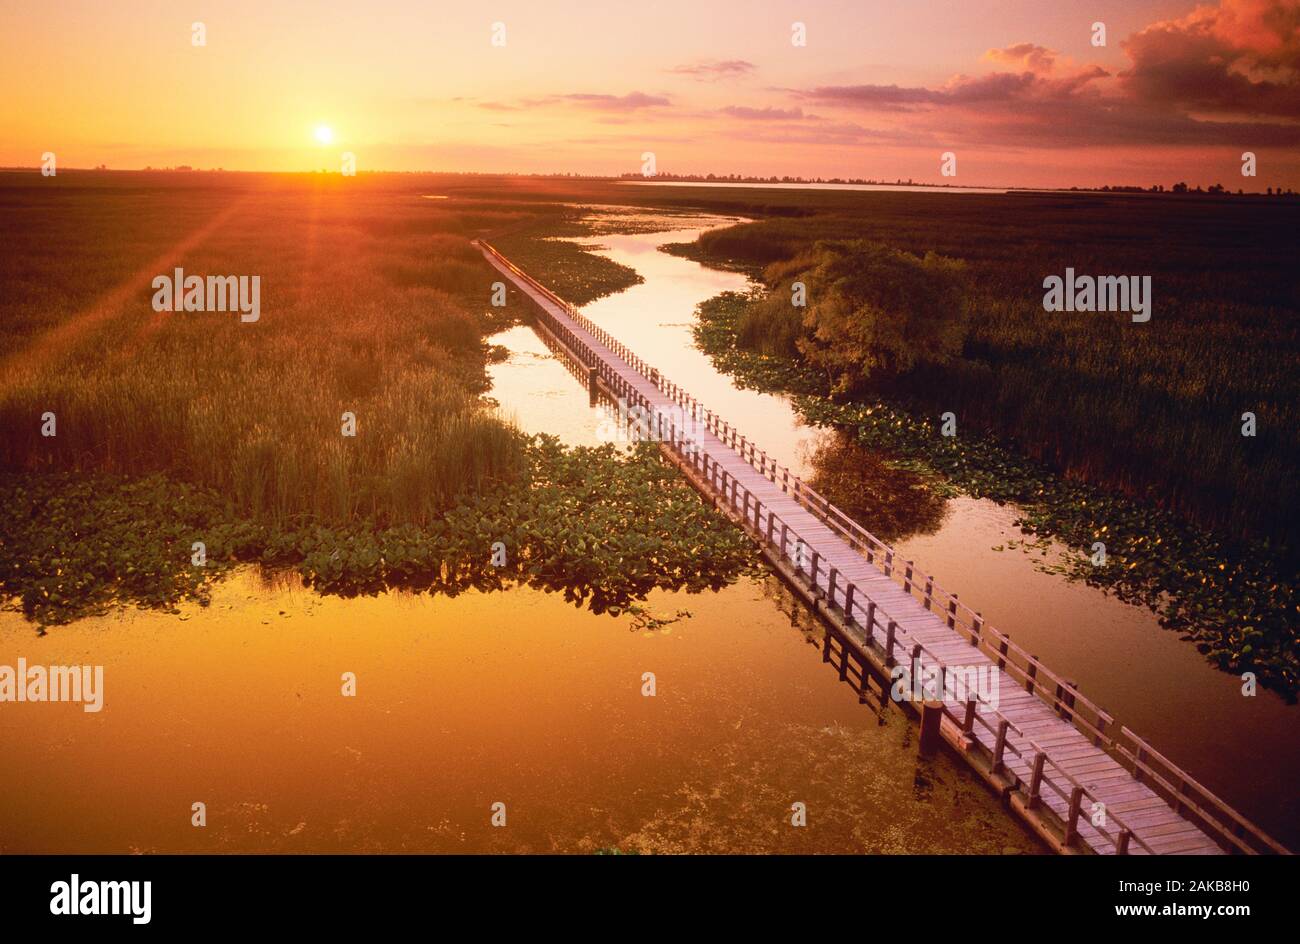 Vue aérienne de paysage avec une promenade au coucher du soleil, des marais du parc national de la Pointe-Pelée, Ontario, Canada Banque D'Images